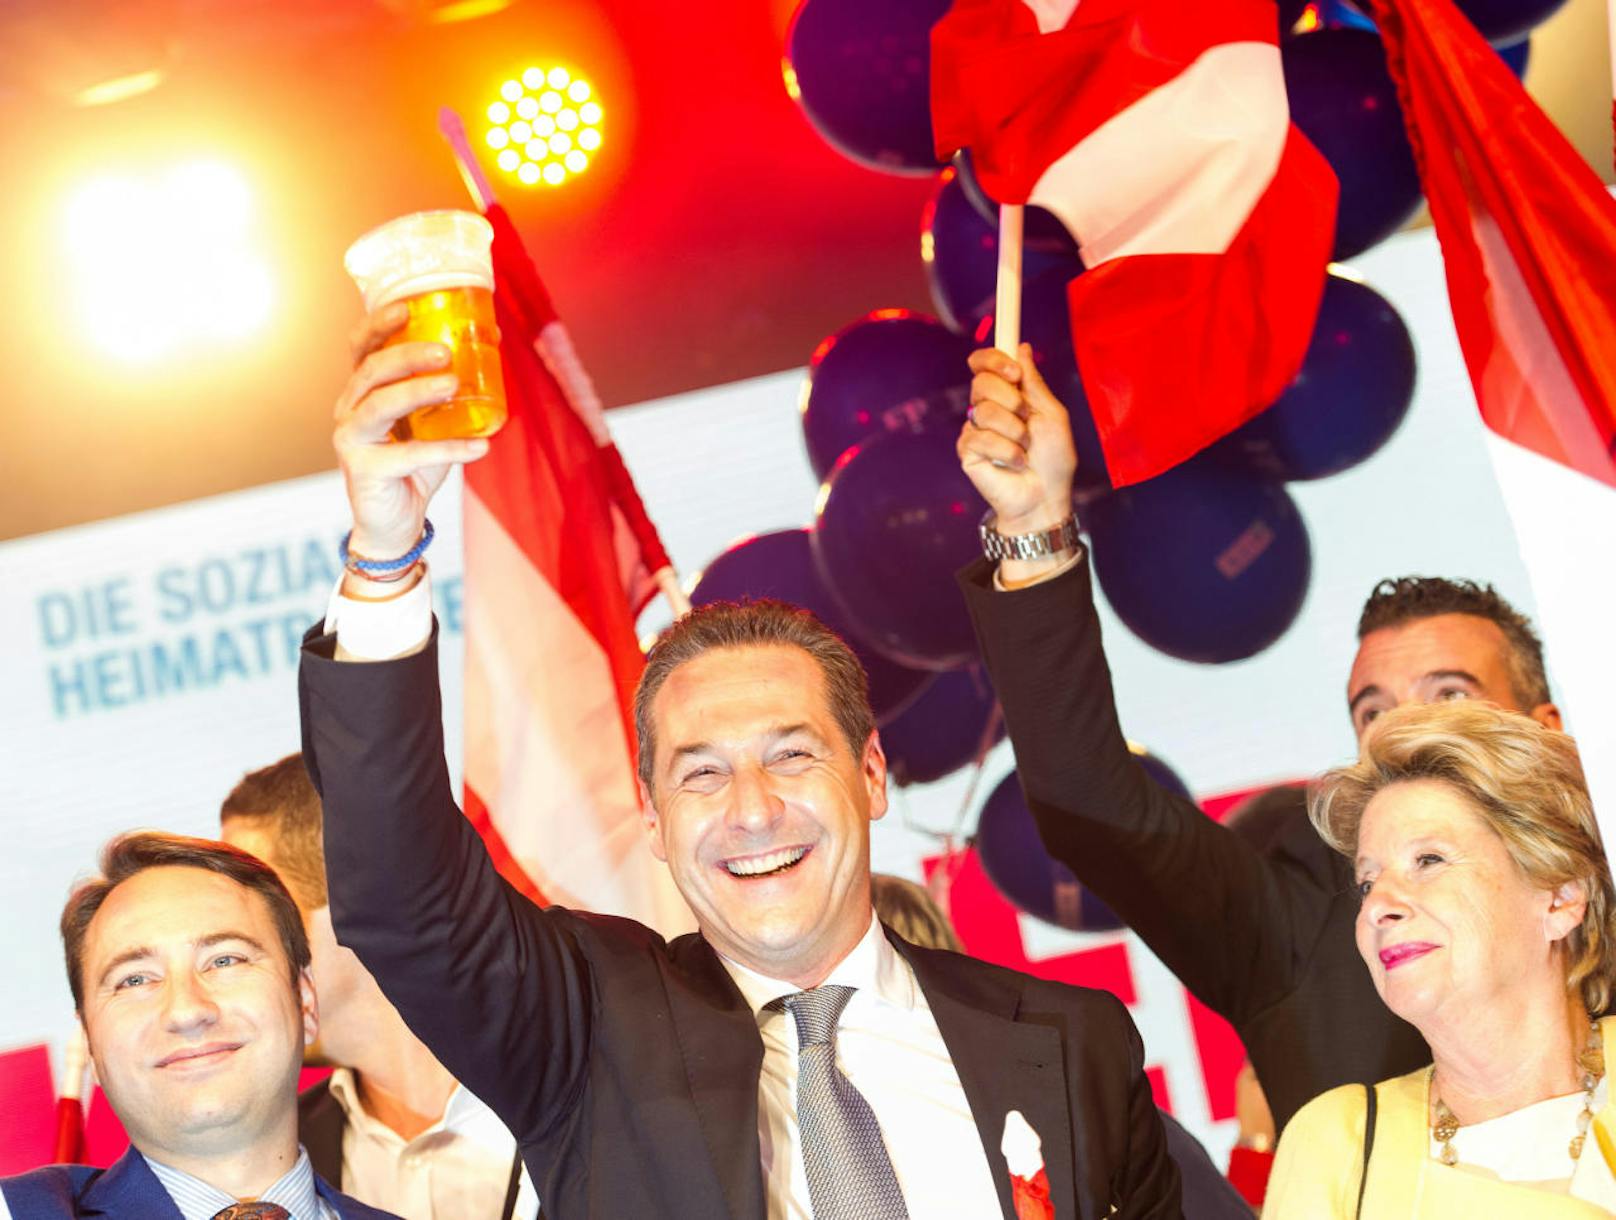 Am 4. März 2017 wurde Strache mit seinem bisher höchsten Ergebnis von 98,7 Prozent der Delegiertenstimmen zum Bundesparteiobmann wiedergewählt und vom Bundesparteivorstand einstimmig als Spitzenkandidat für die Nationalratswahl in Österreich 2017 nominiert.